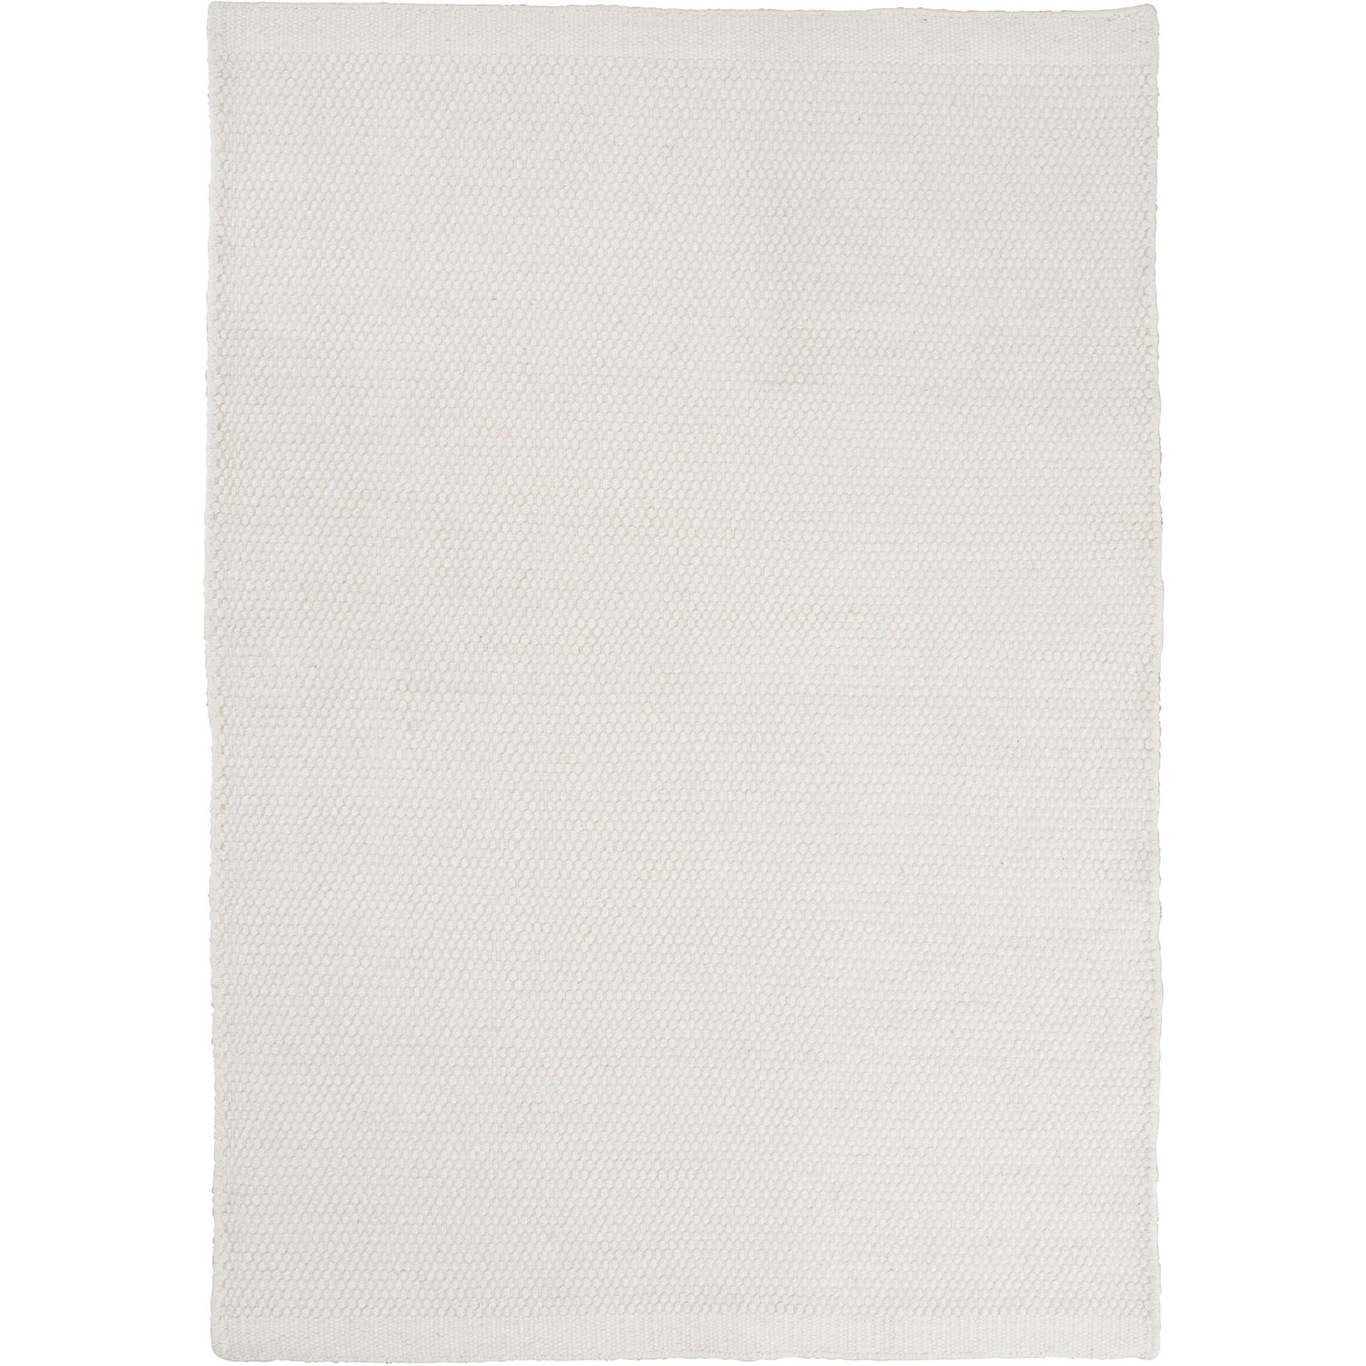 Asko Teppich Weiß, 250x350 cm